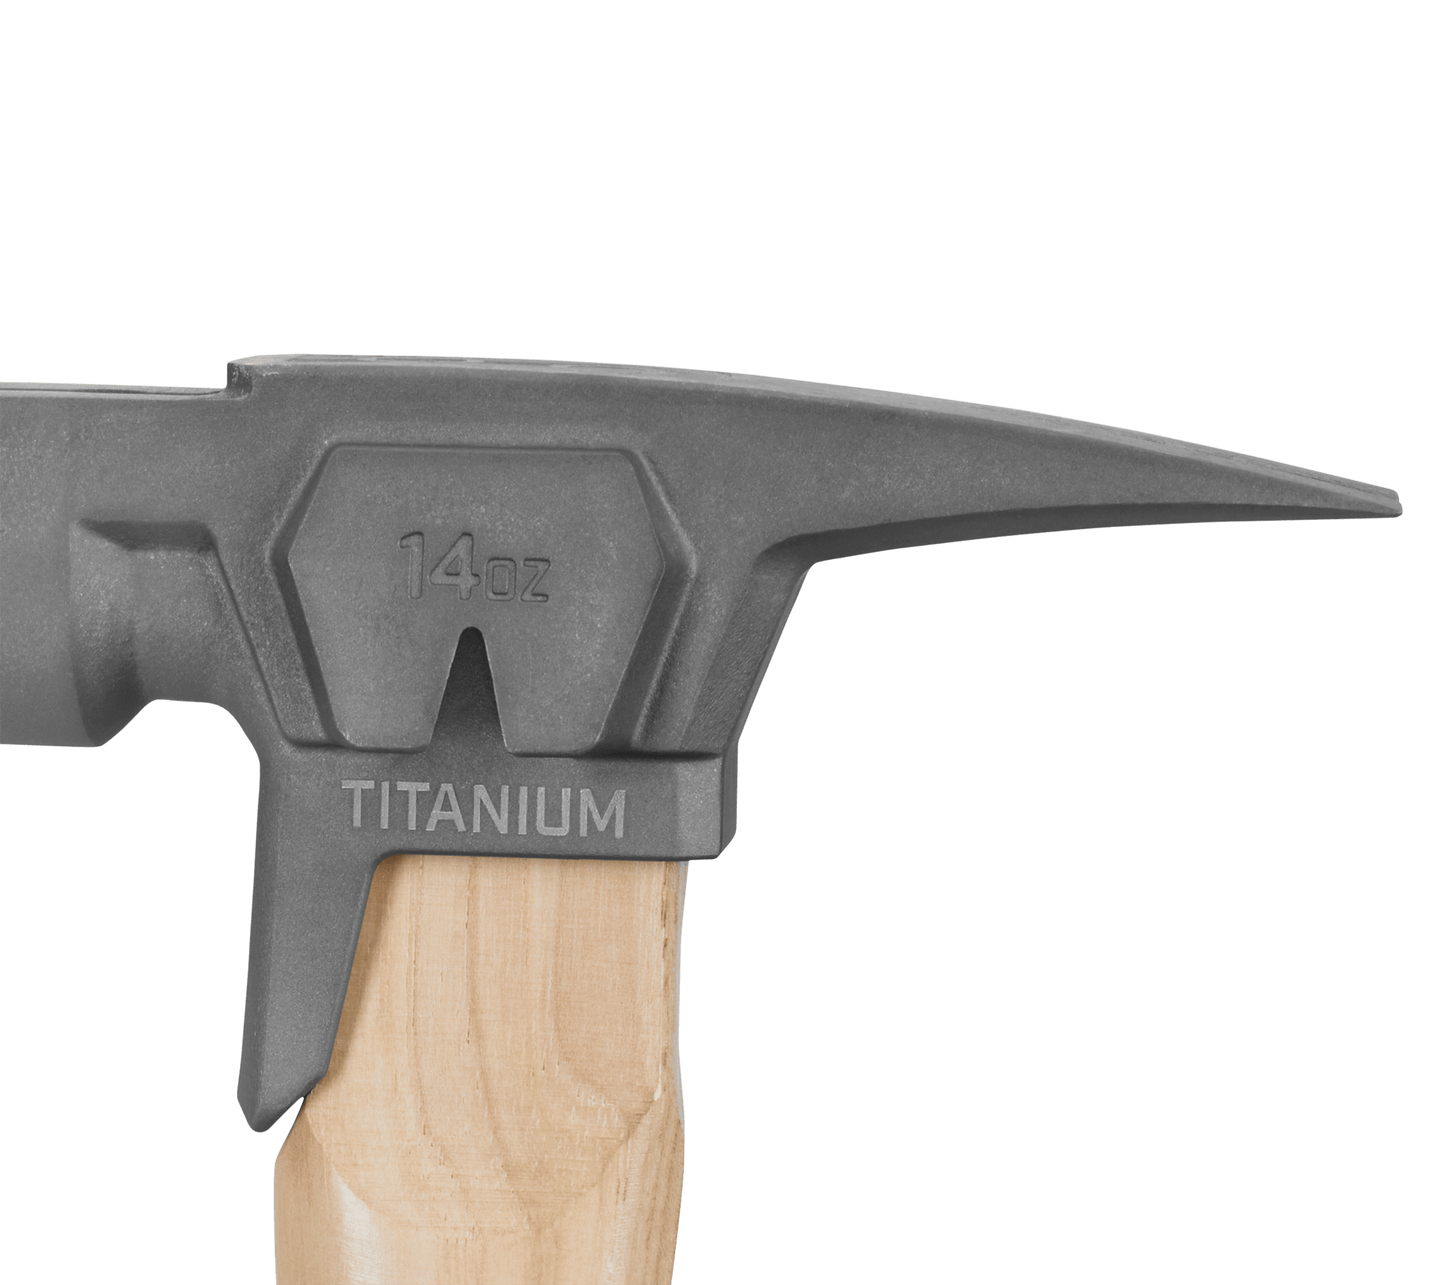 14oz Titanium Hammer